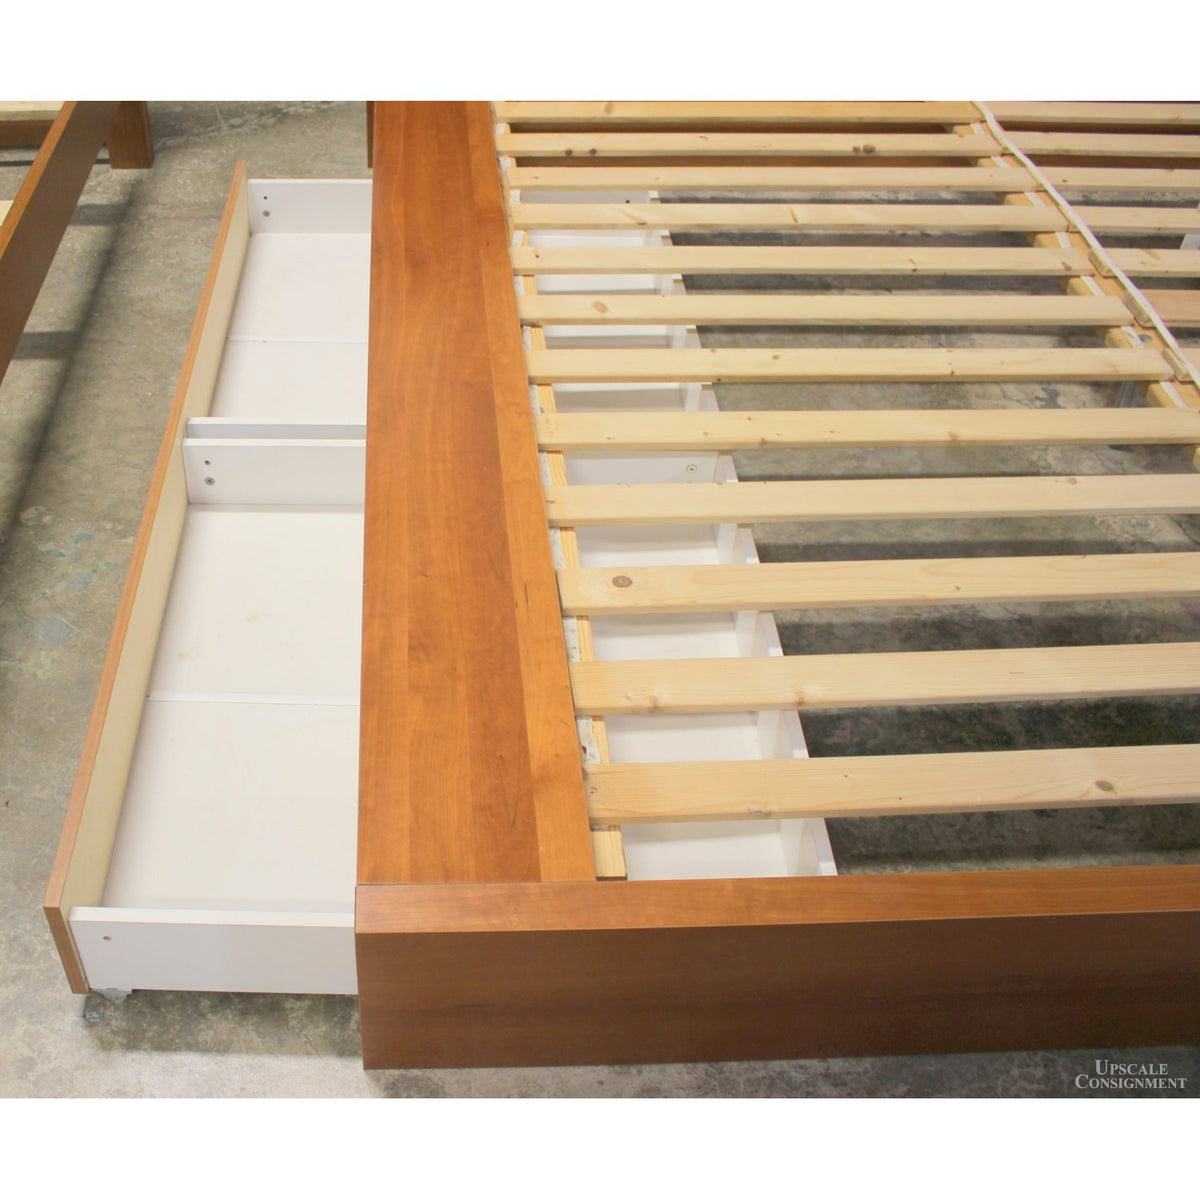 Bed Concept King Size Platform Bed w/Storage